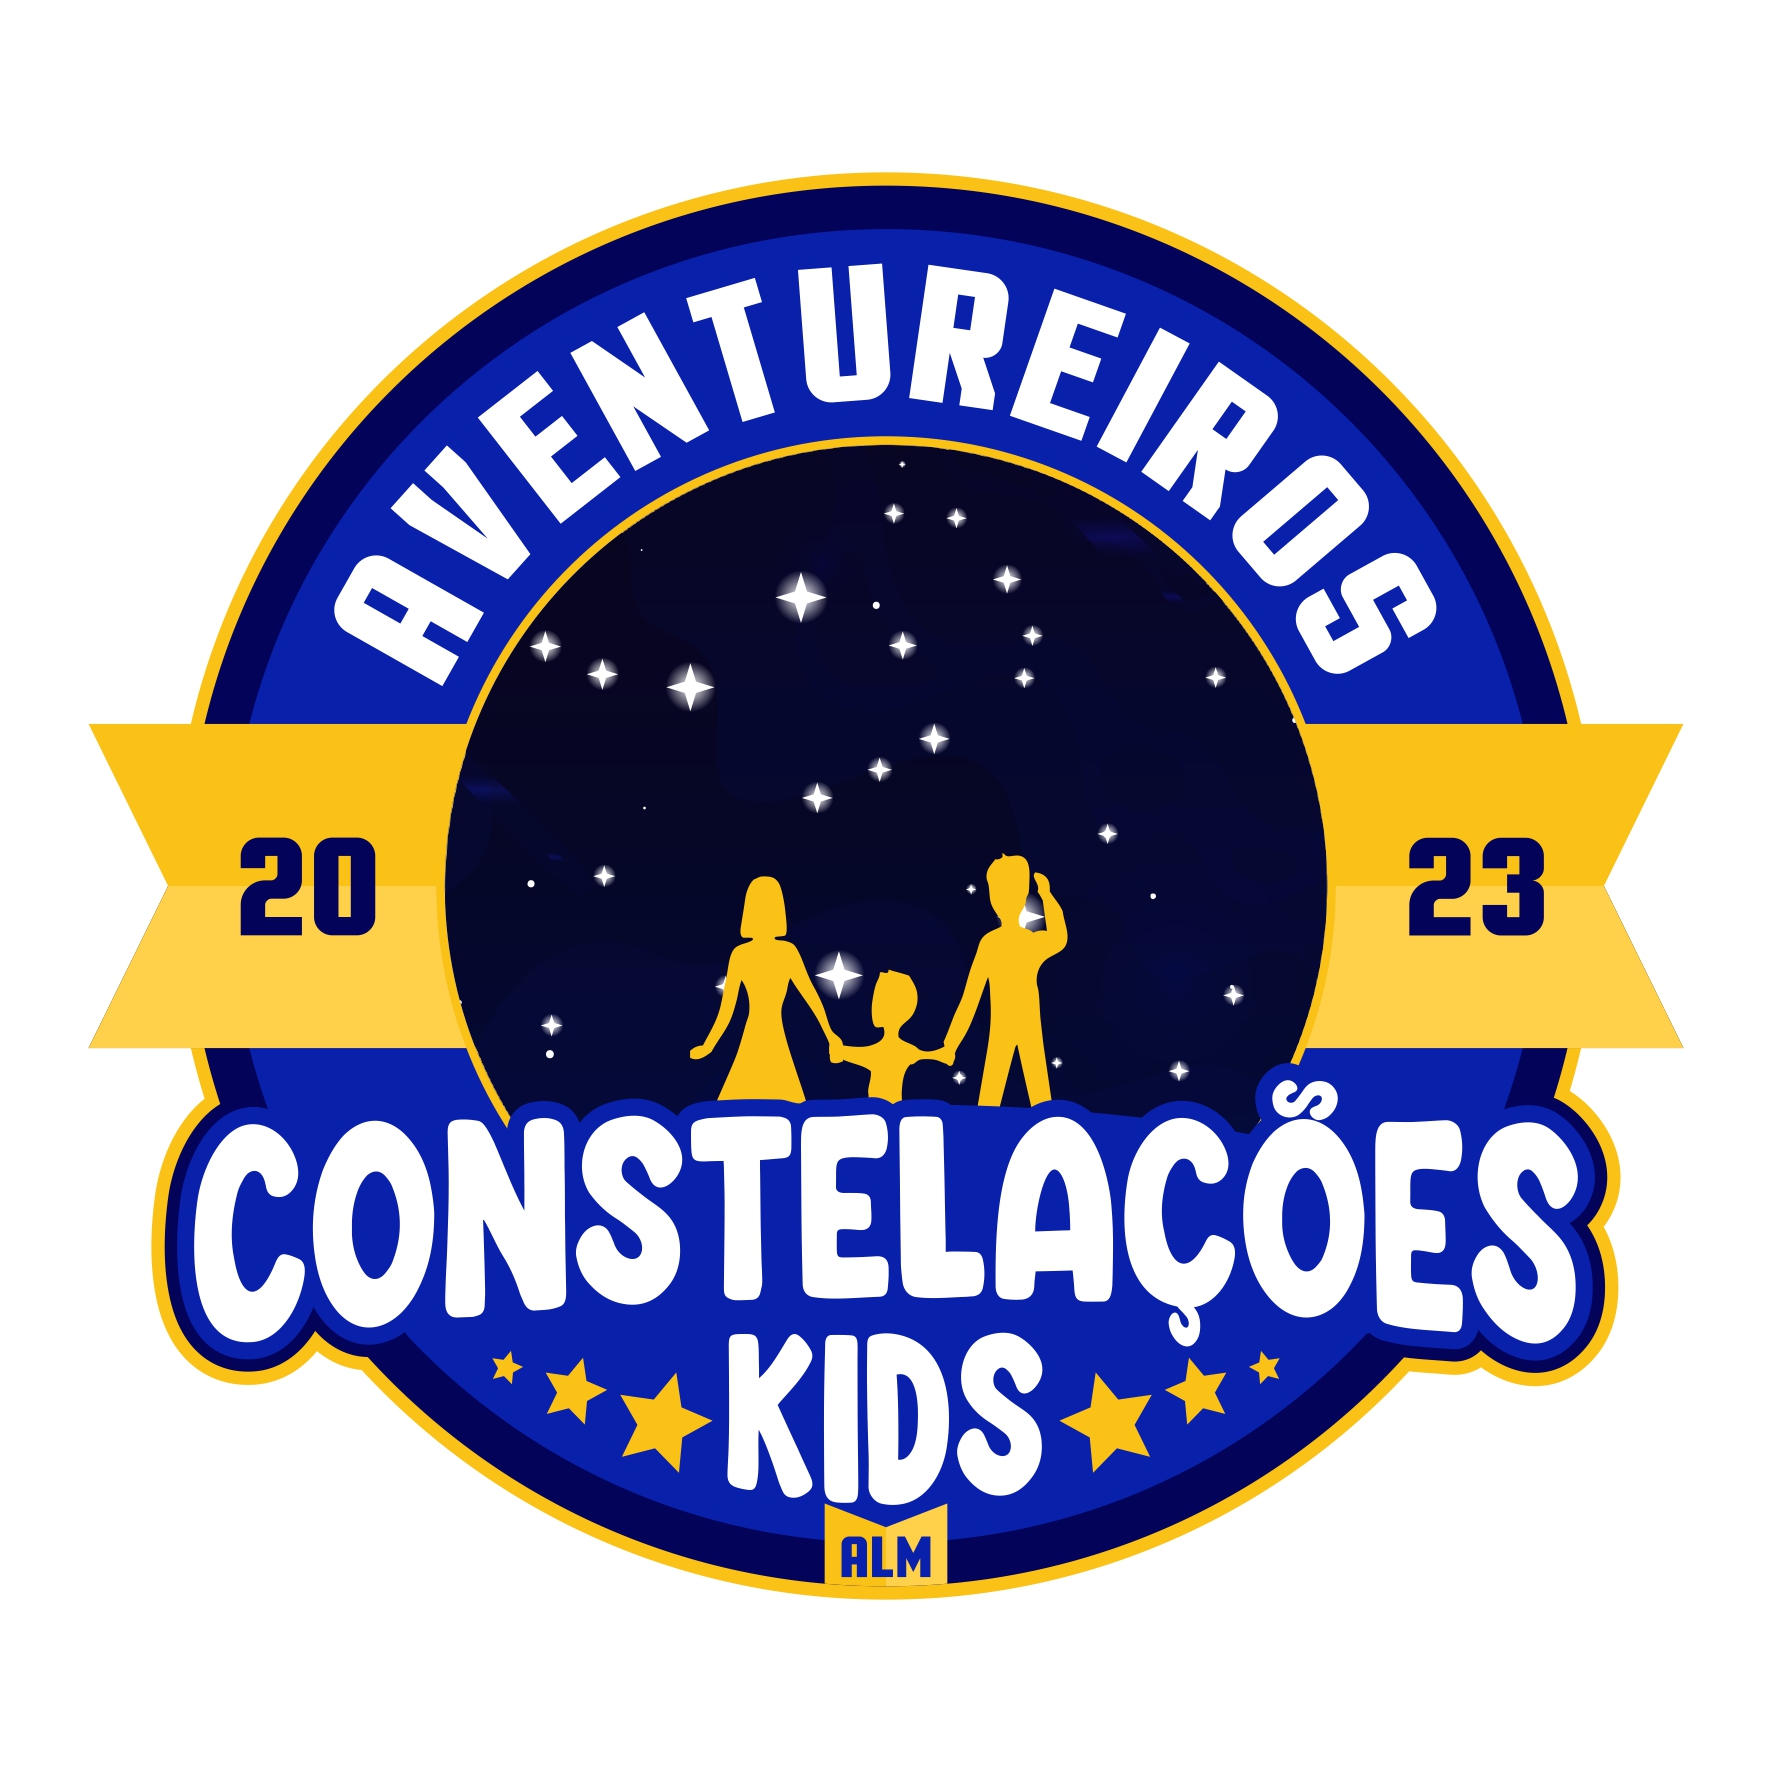 Constelações Kids